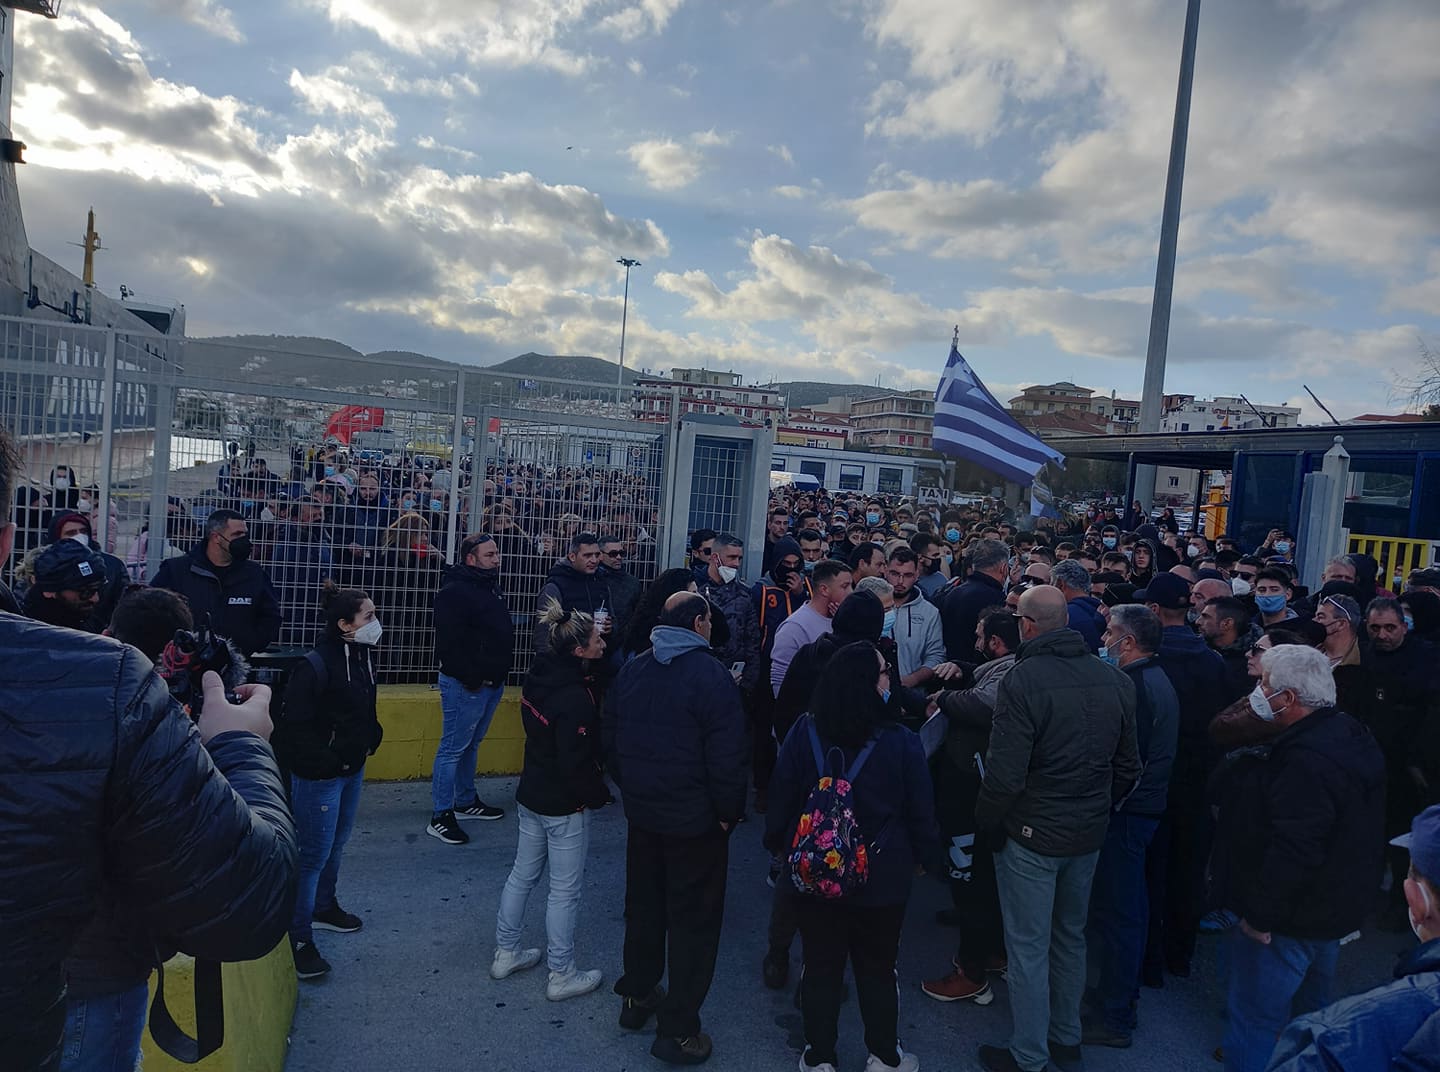 18 αιρετοί και πολίτες σε δίκη για τα γεγονότα του πλοίου “Πελαγίτης” στη Χίο